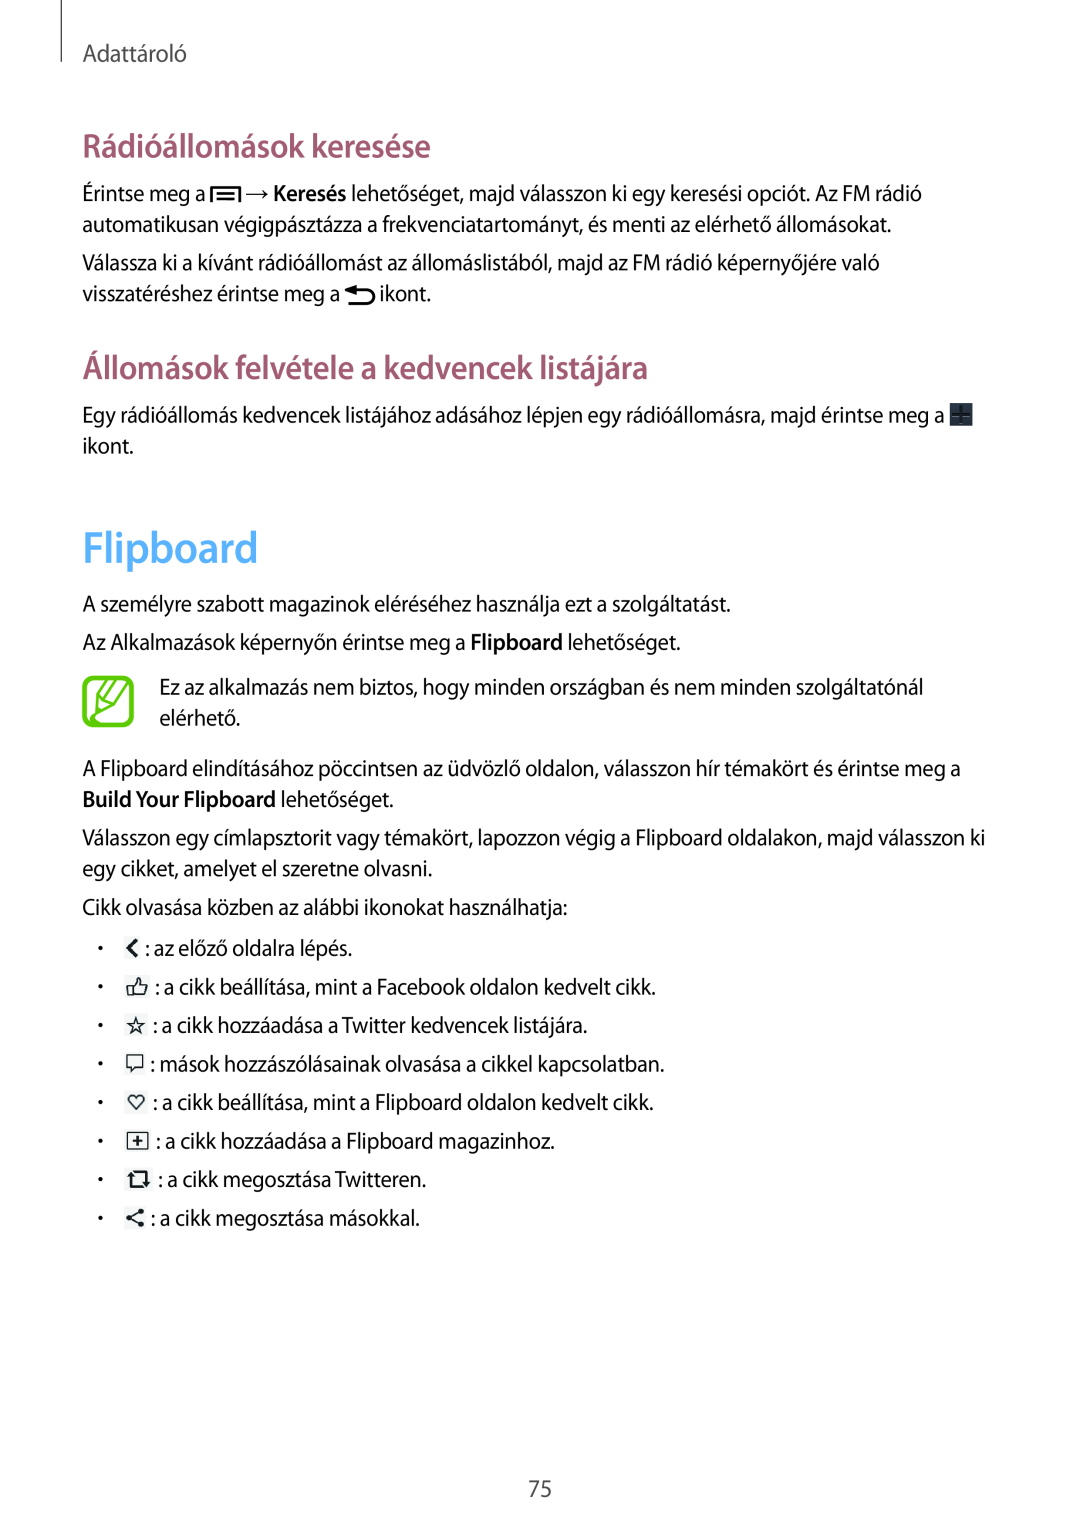 Samsung SM-G3815ZBAVDH manual Flipboard, Rádióállomások keresése, Állomások felvétele a kedvencek listájára, Adattároló 